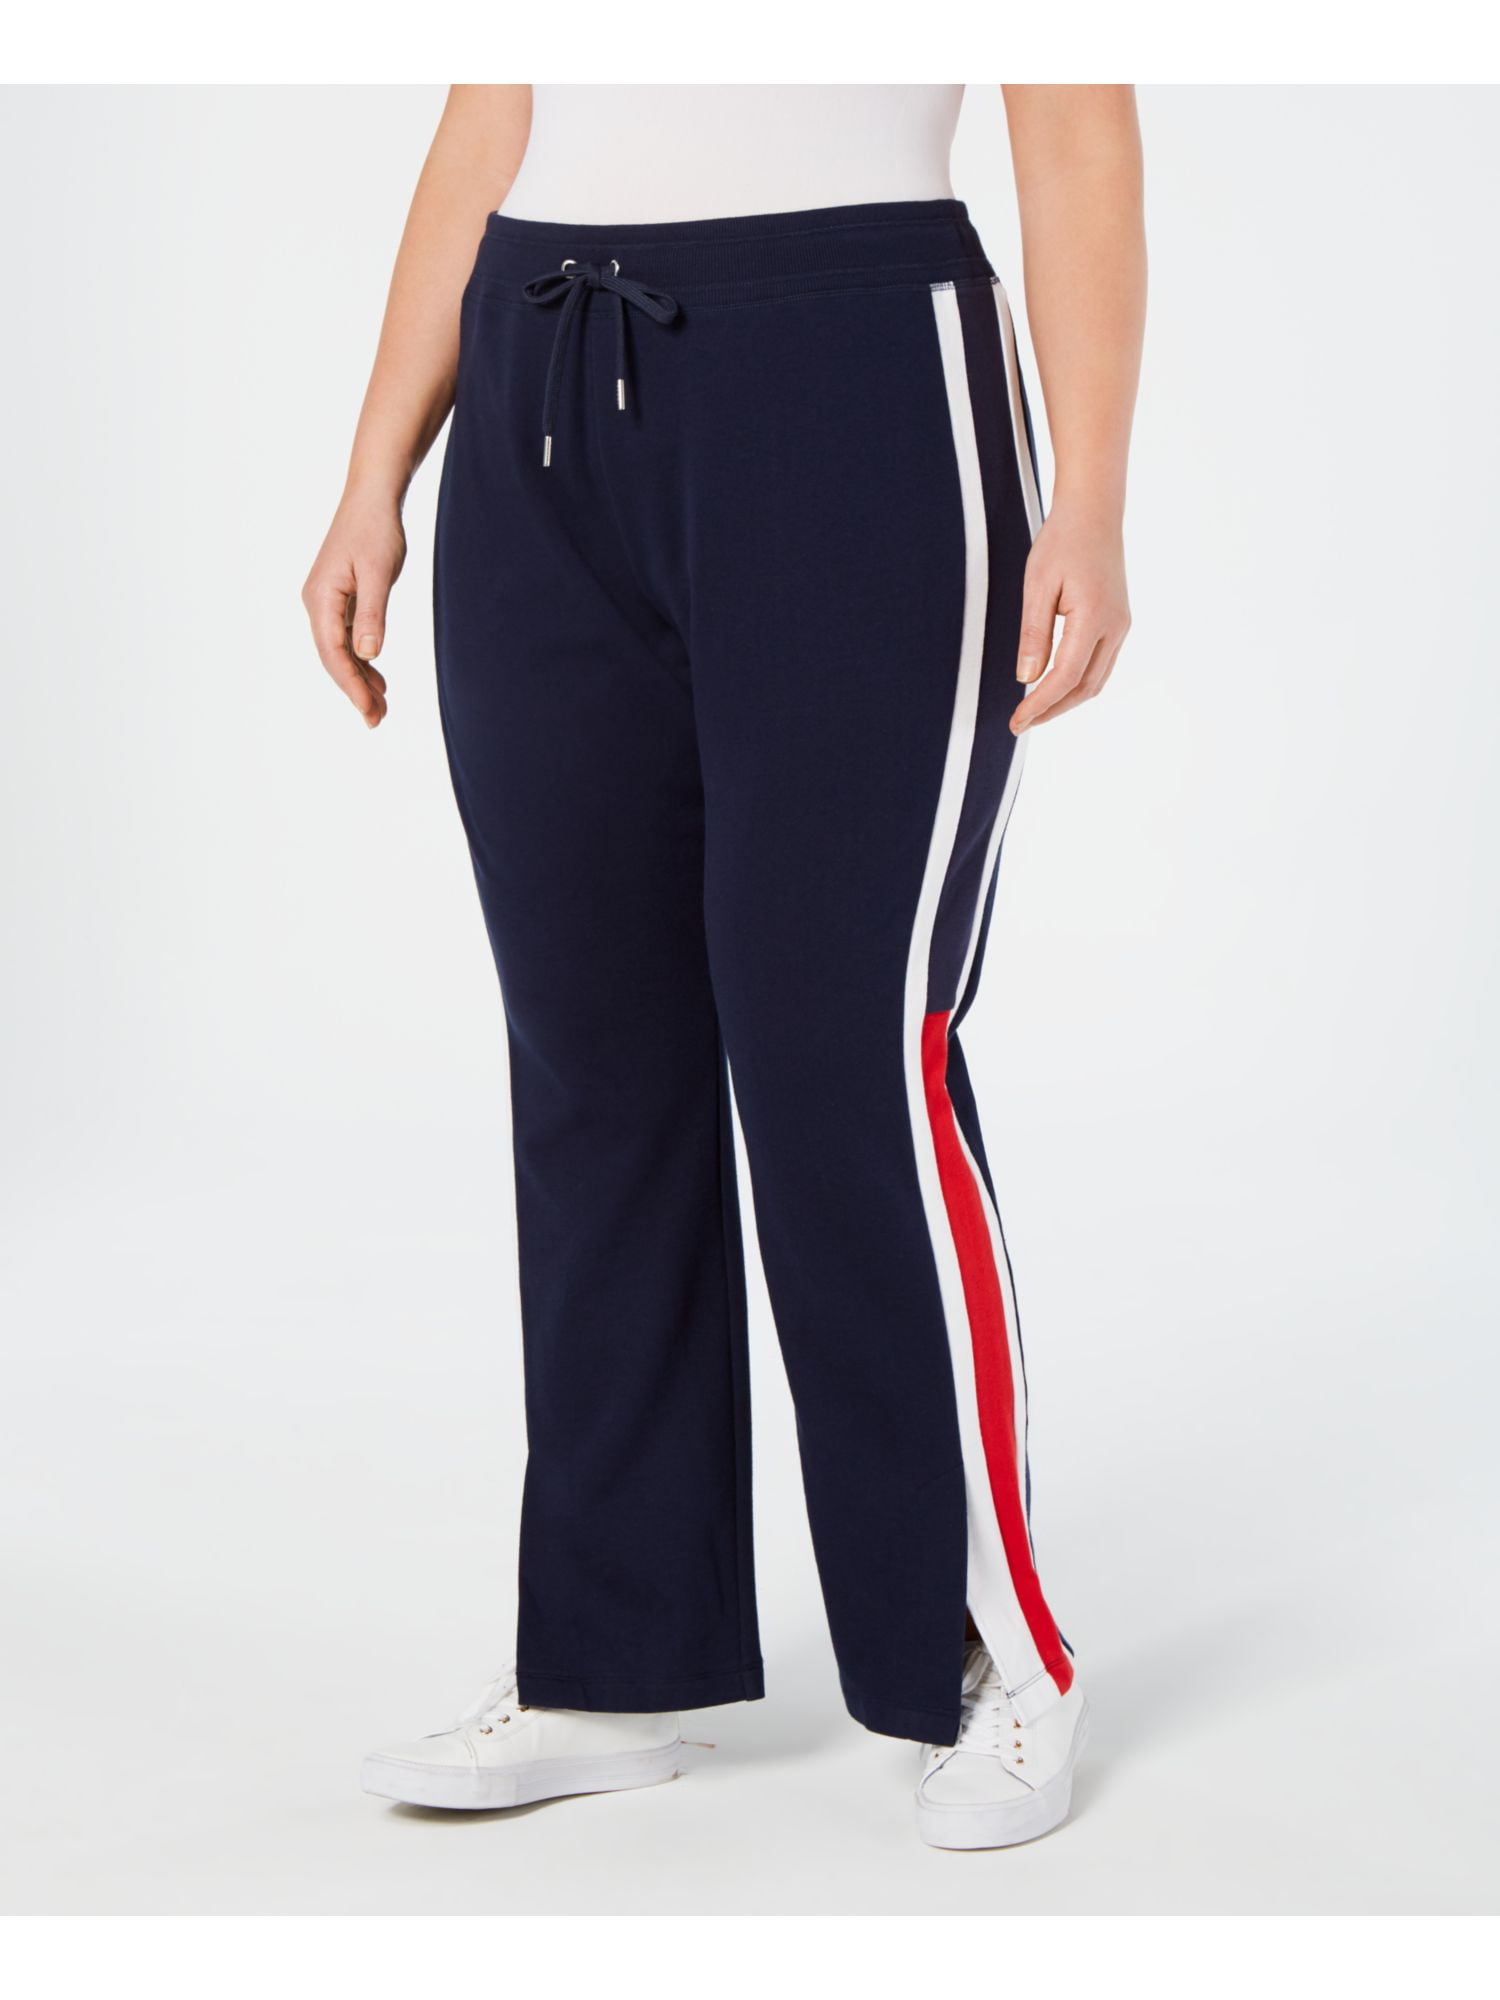 TOMMY HILFIGER Navy Color Block Wear Pants Plus Size: 0X - Walmart.com